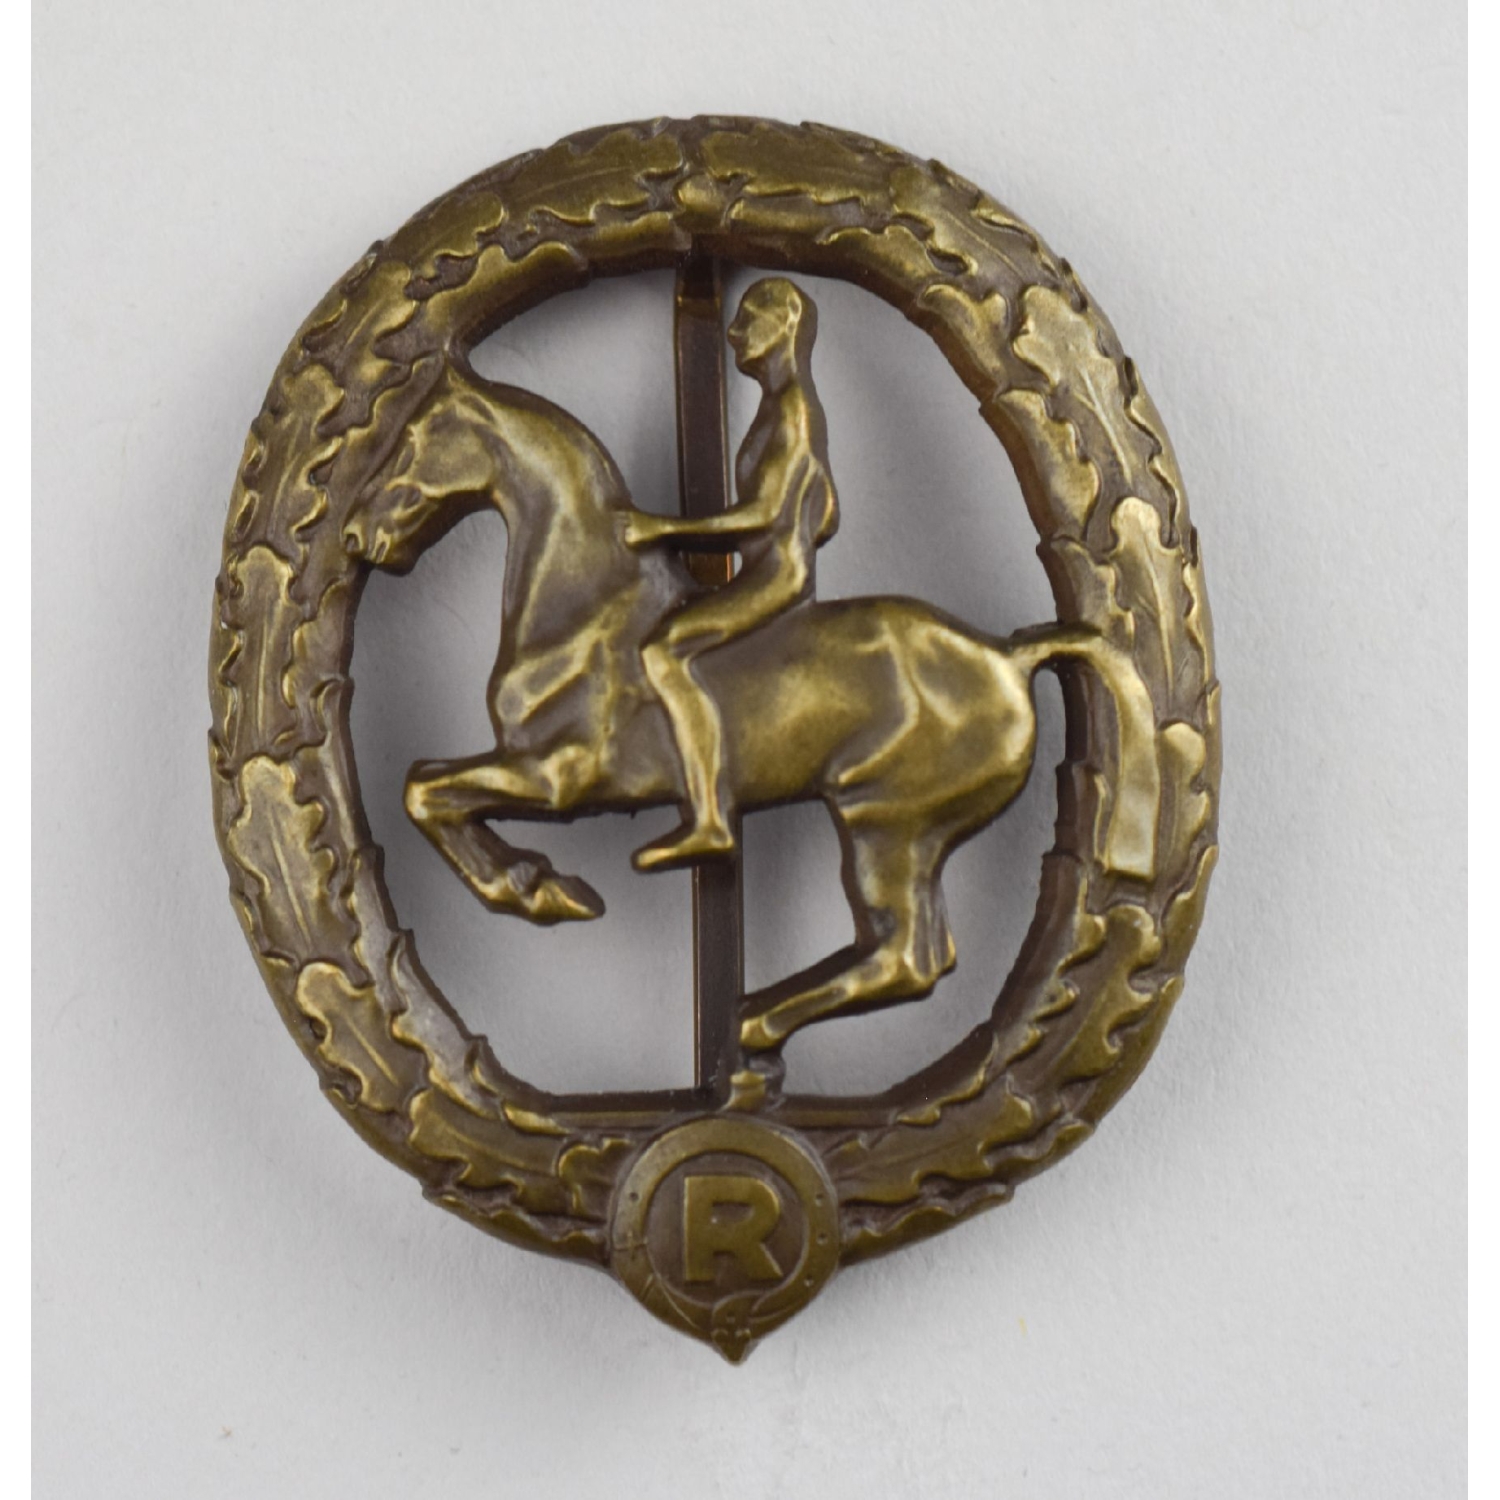 Deutsches Reiterabzeichen 3. Klasse Bronze 1930 Herst. Chr. Lauer, Nürnberg-Berlin